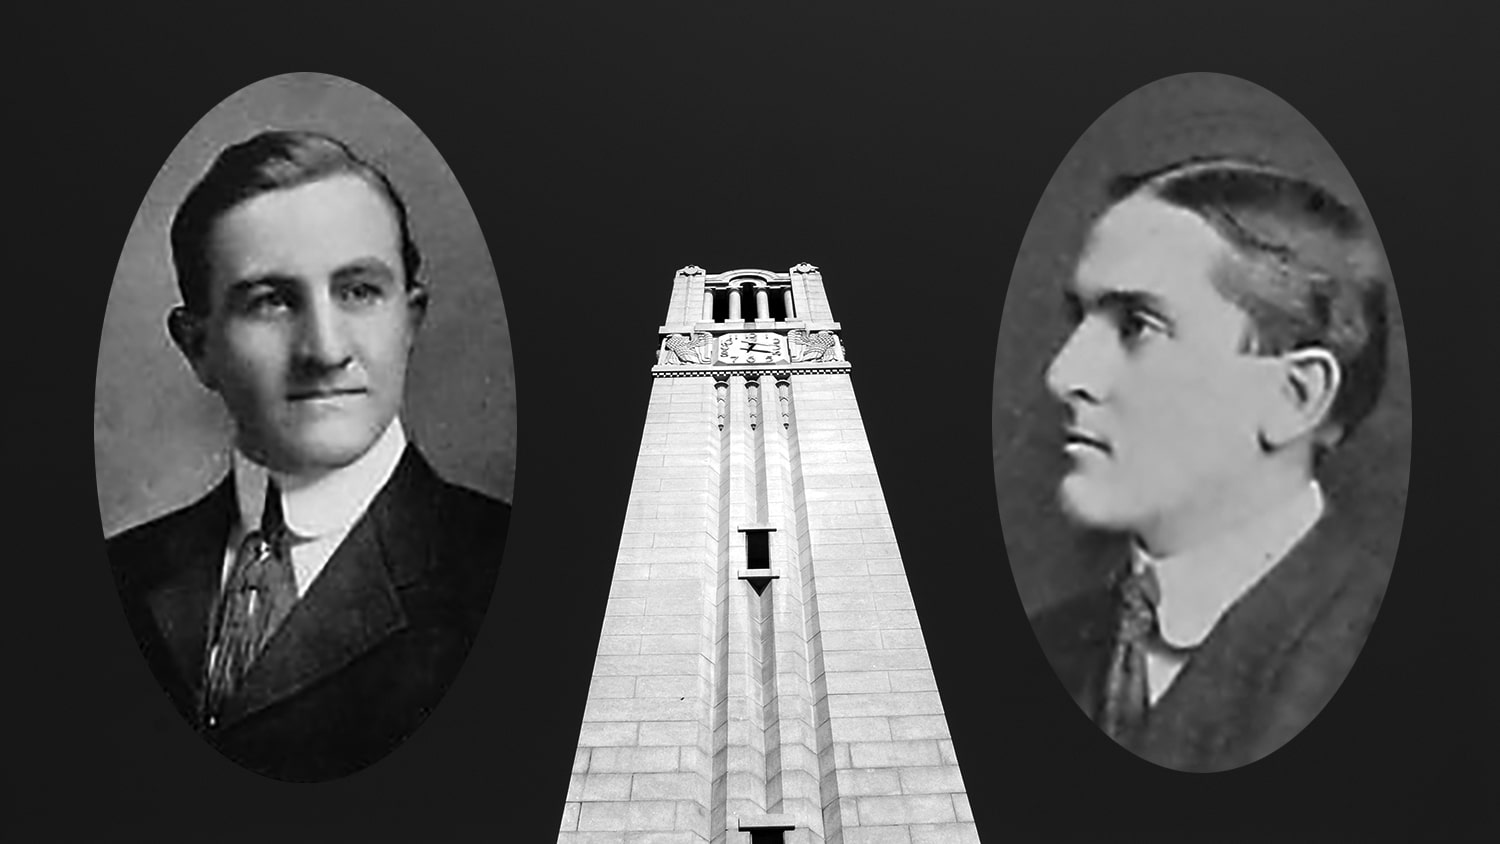 校友Vance Sykes和Frank Thompson的档案照片与钟楼的形象相对照。